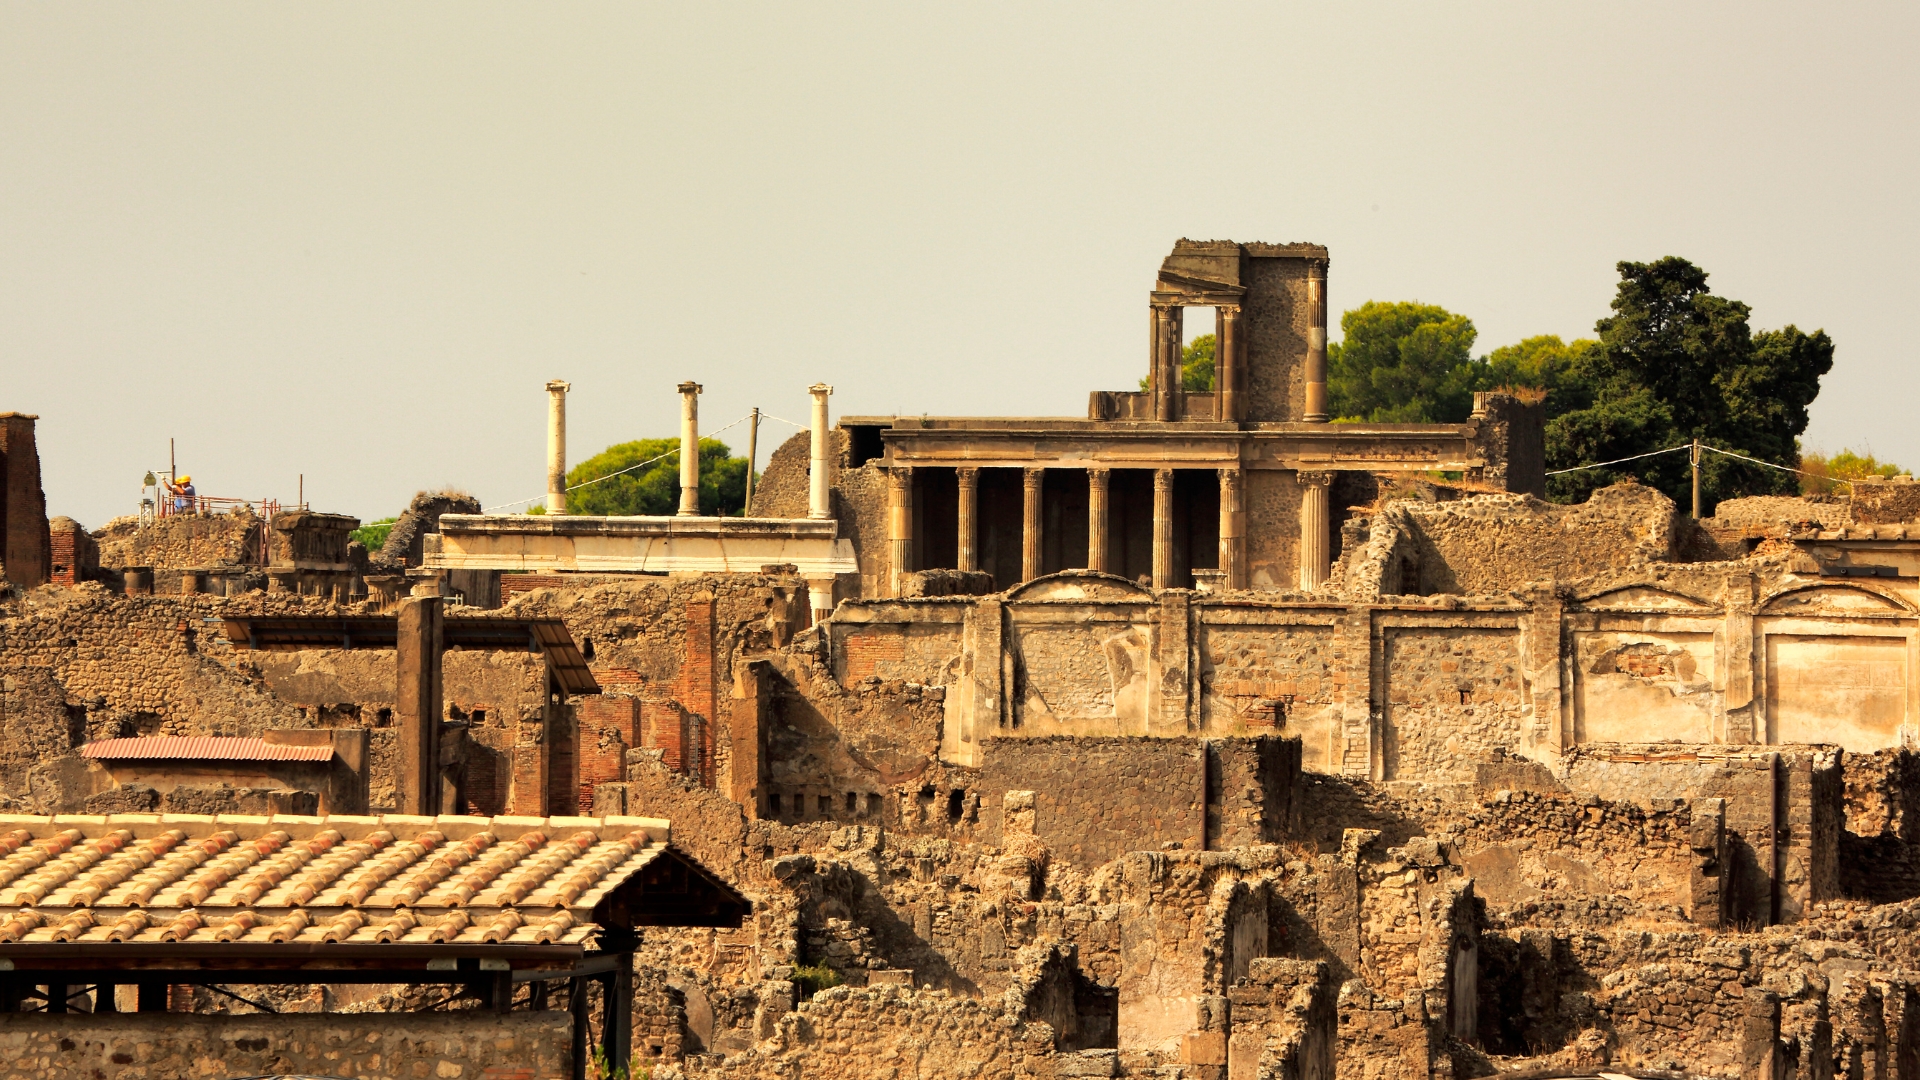 The city of Pompeii